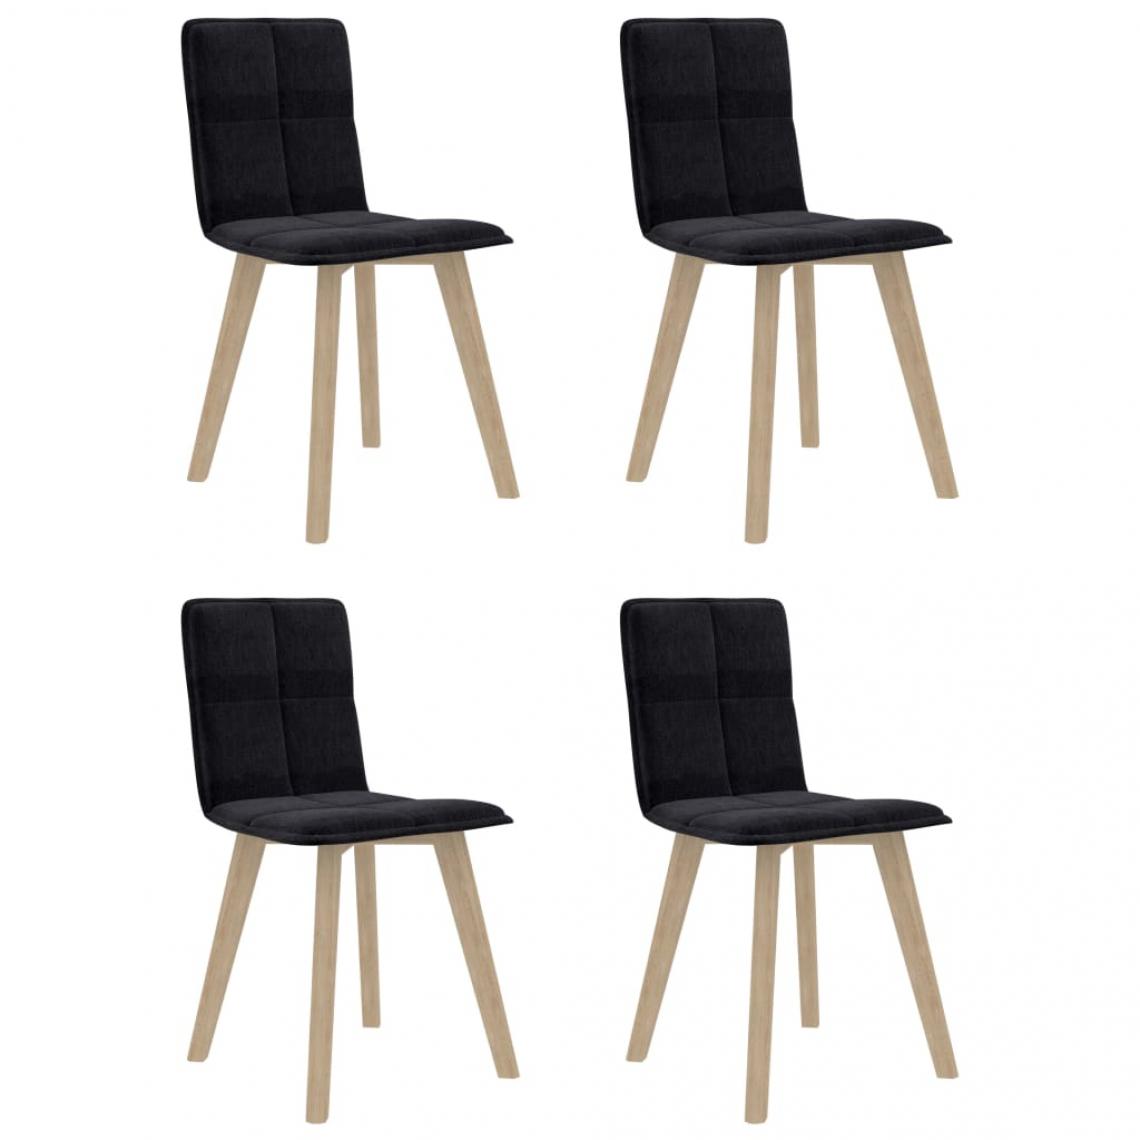 Decoshop26 - Lot de 4 chaises de salle à manger cuisine design moderne tissu noir CDS021847 - Chaises